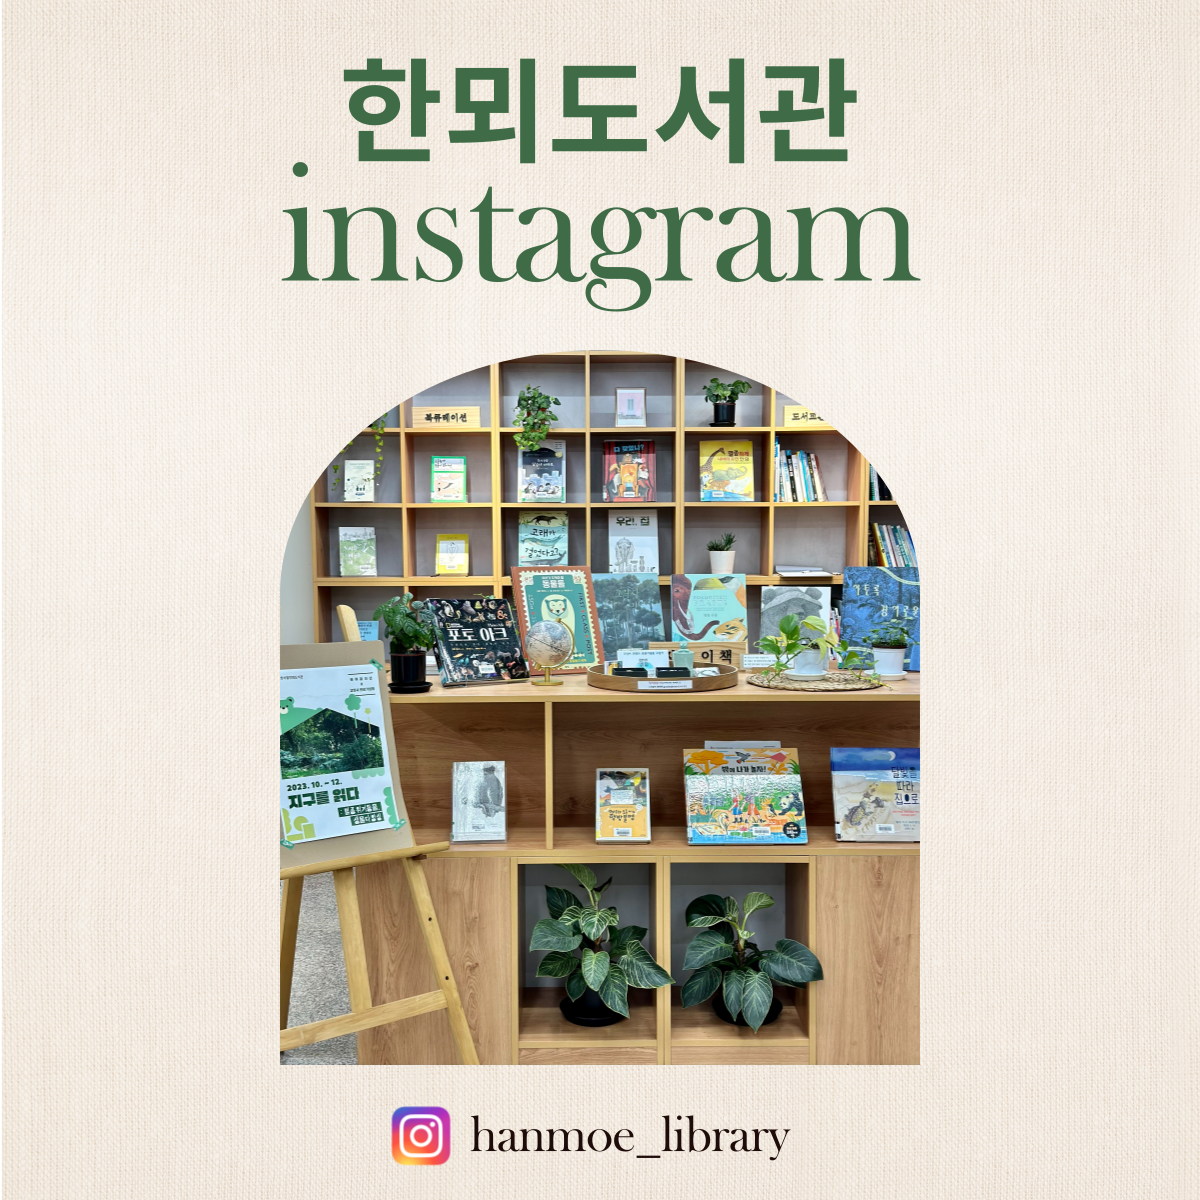 한뫼도서관 인스타그램 한뫼도서관 인스타그램
https://www.instagram.com/hanmoe_library/